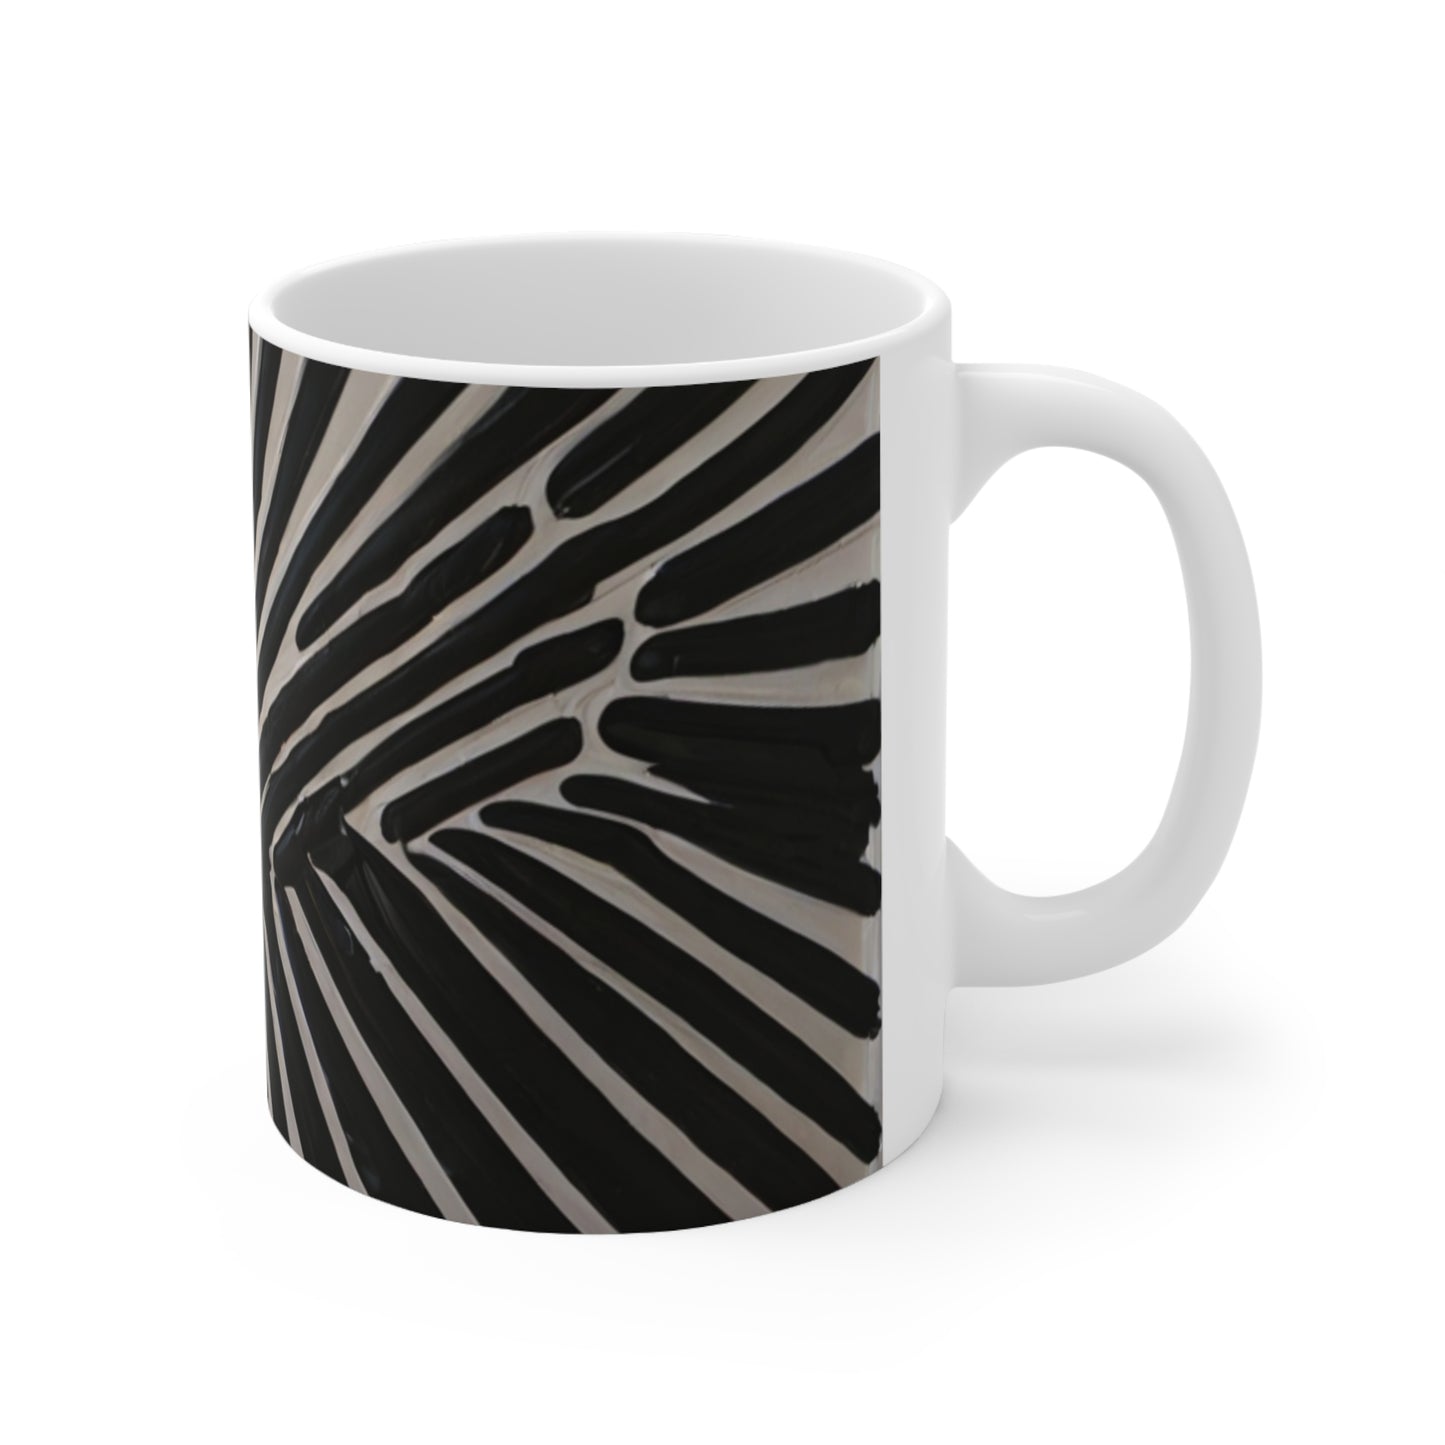 Messy Black Lines Paint Mug - Ceramic Coffee Mug 11oz